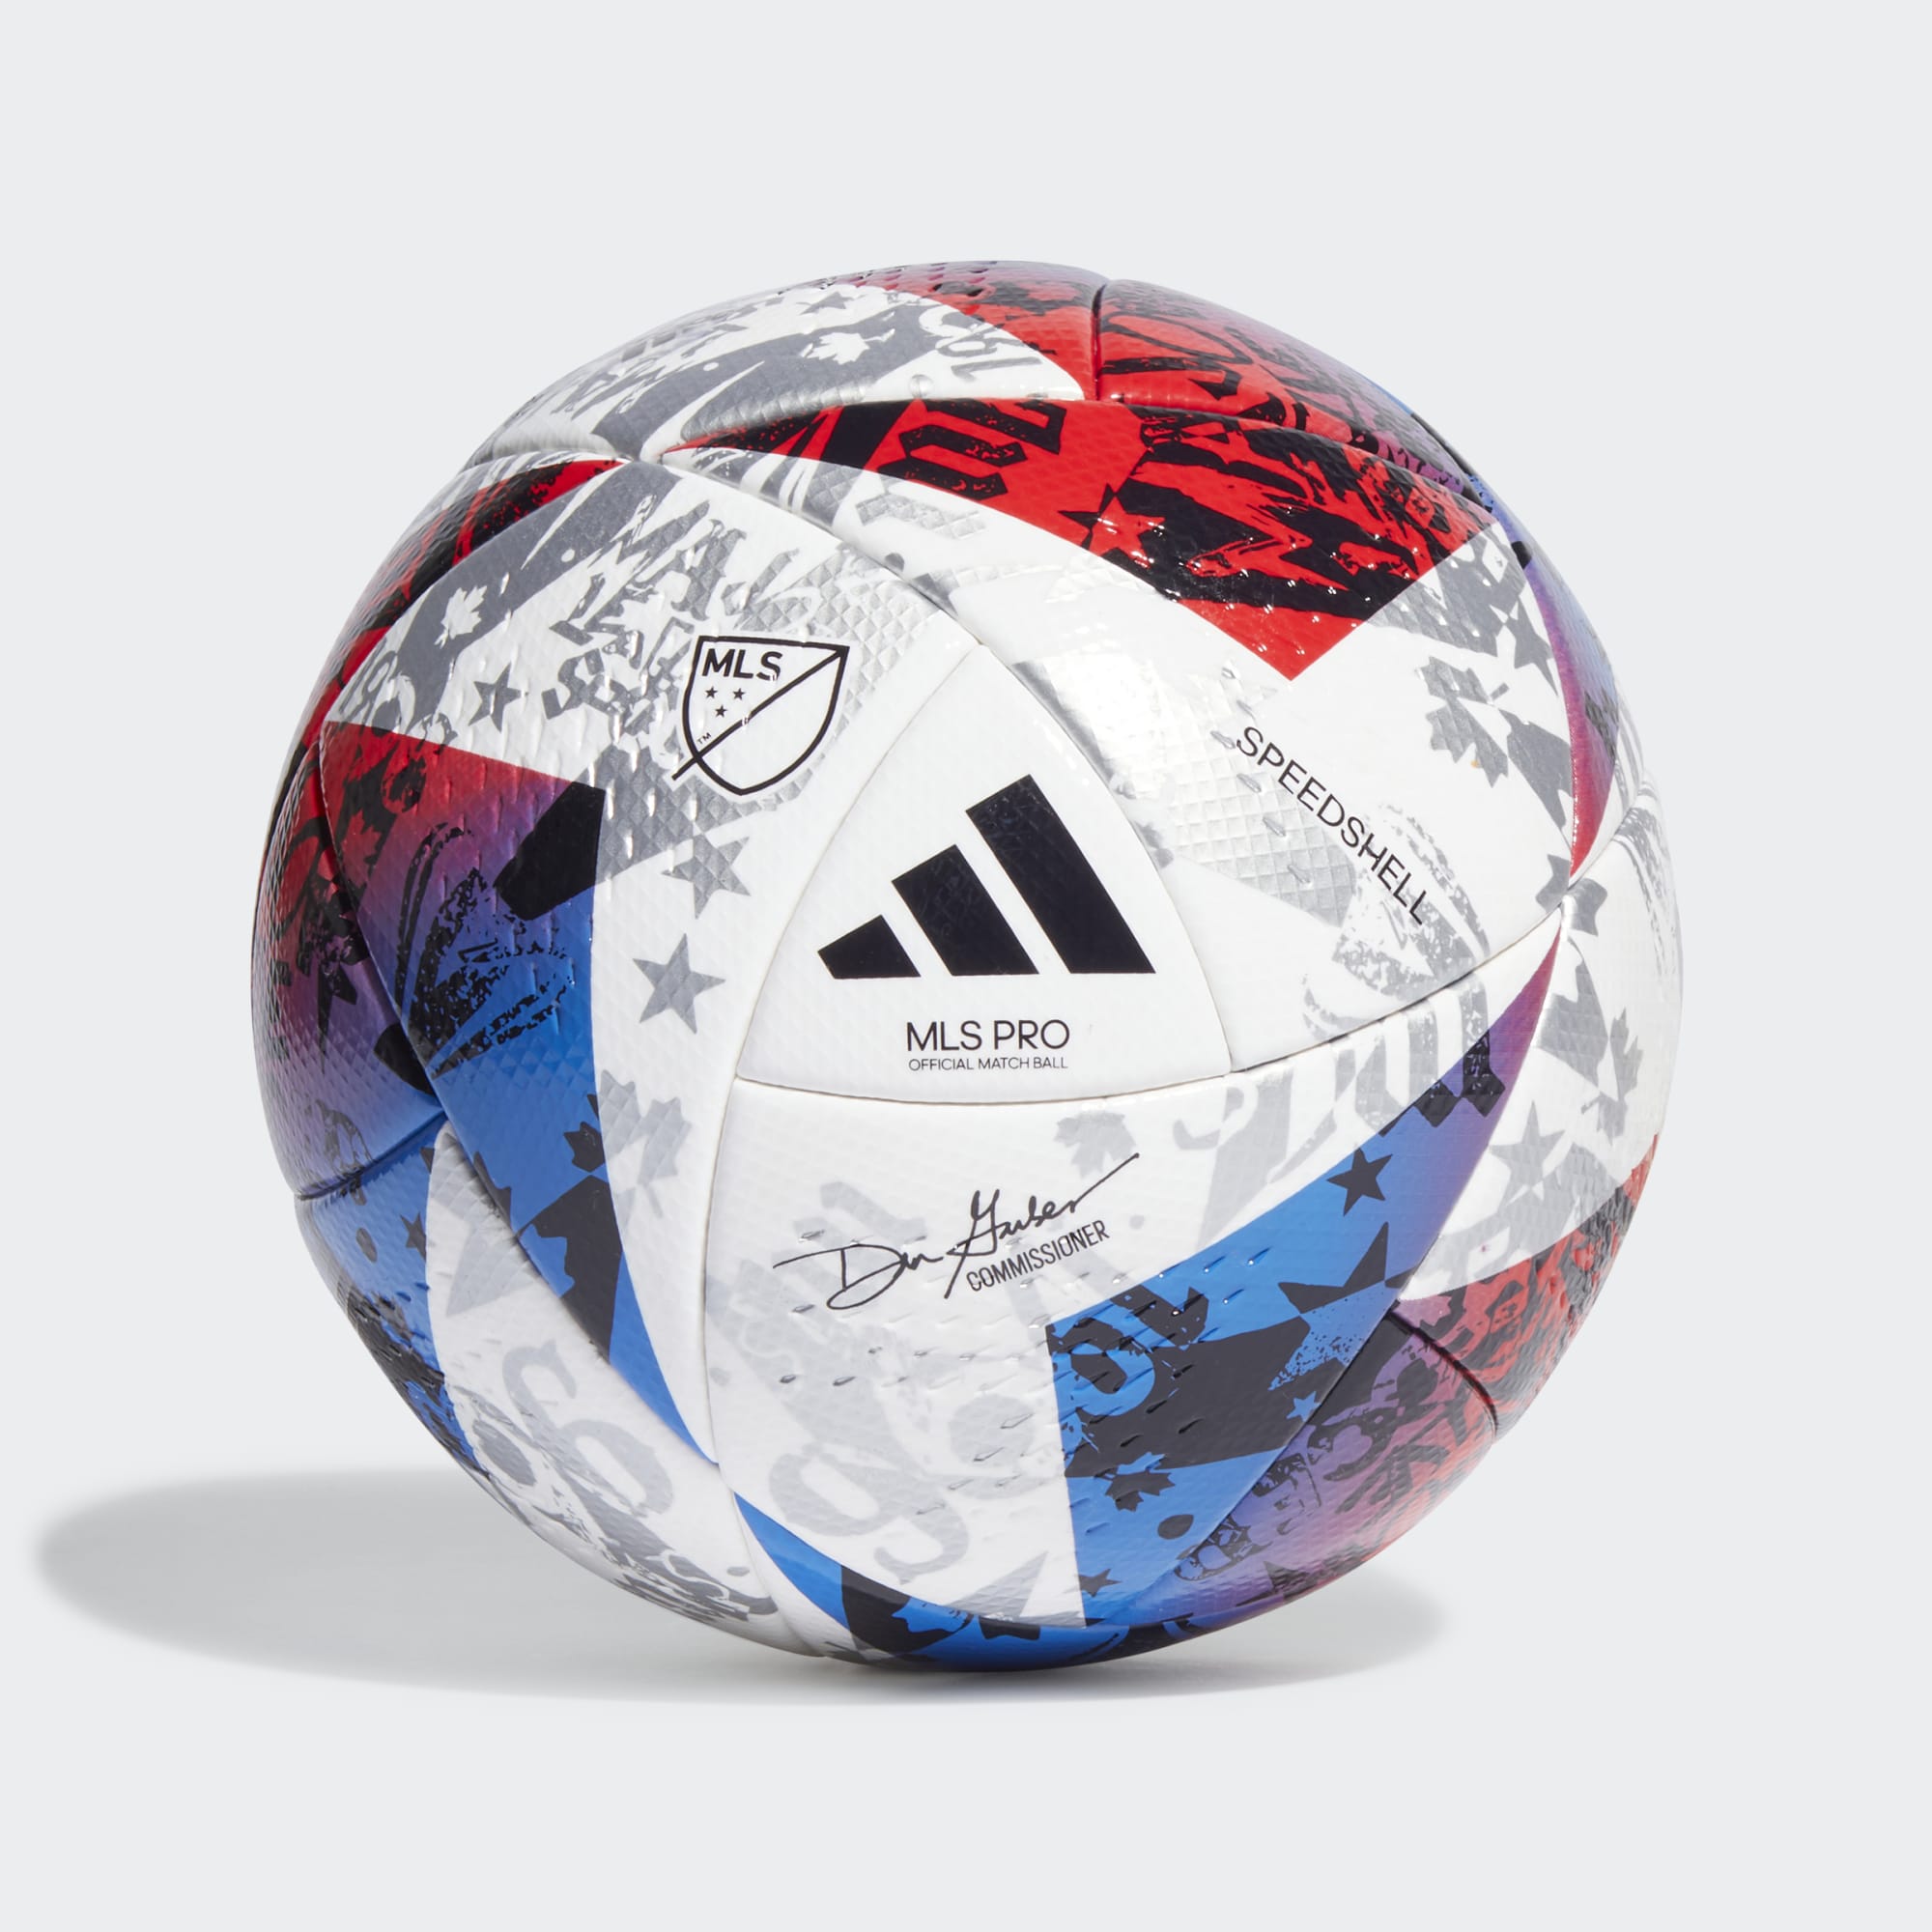 Belichamen kans Dempsey stefanssoccer.com:adidas 23 MLS Pro Match Ball - White